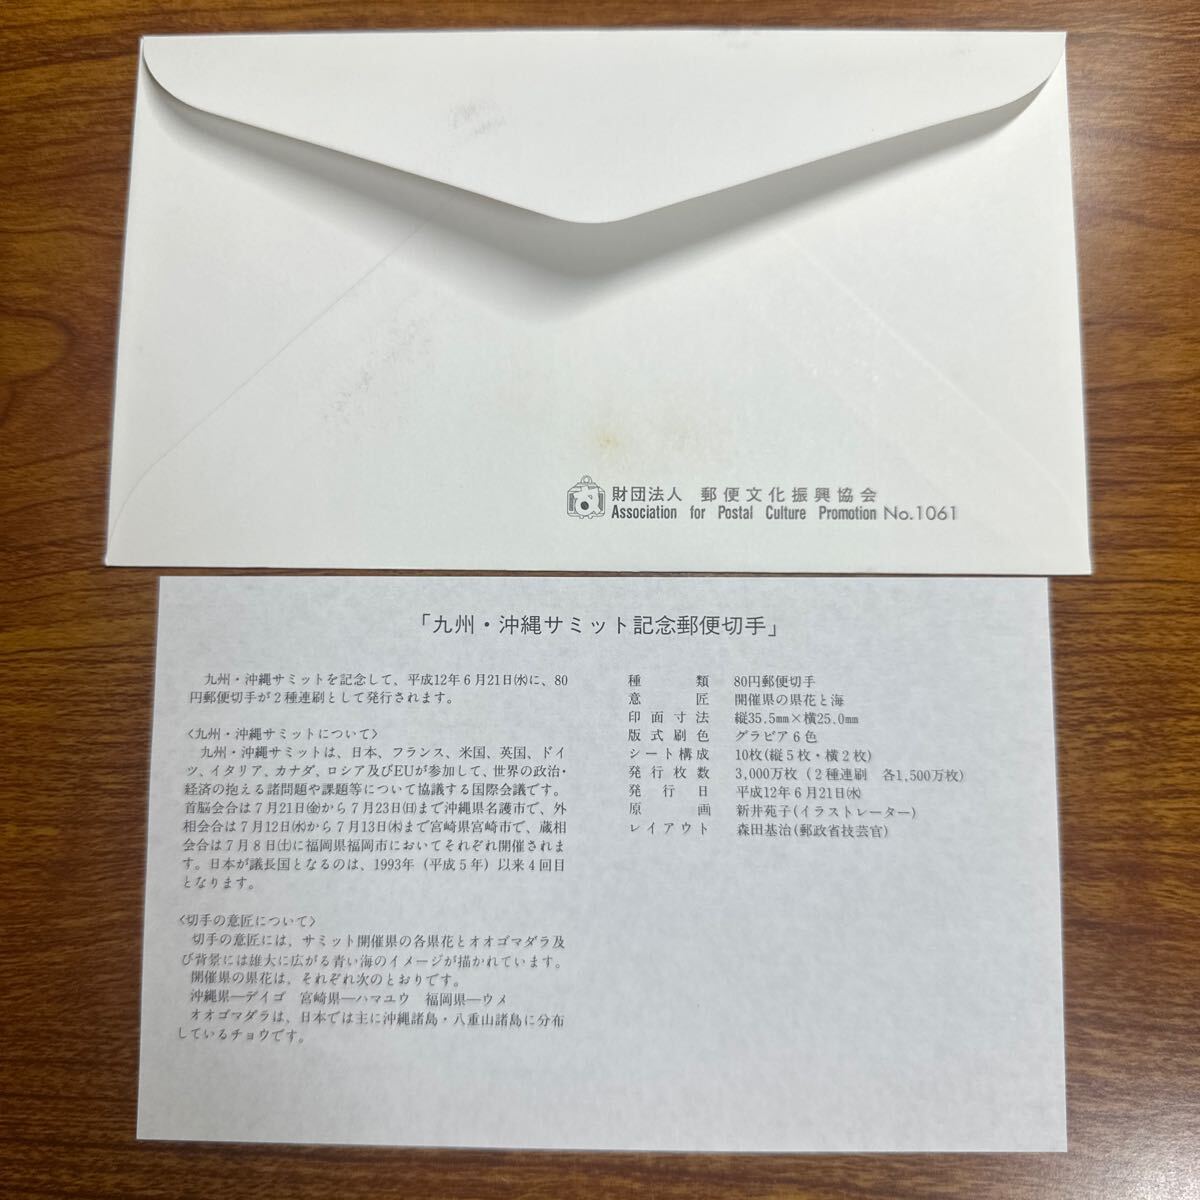  First Day Cover Kyushu * Okinawa summit memory mail stamp Heisei era 12 year for 